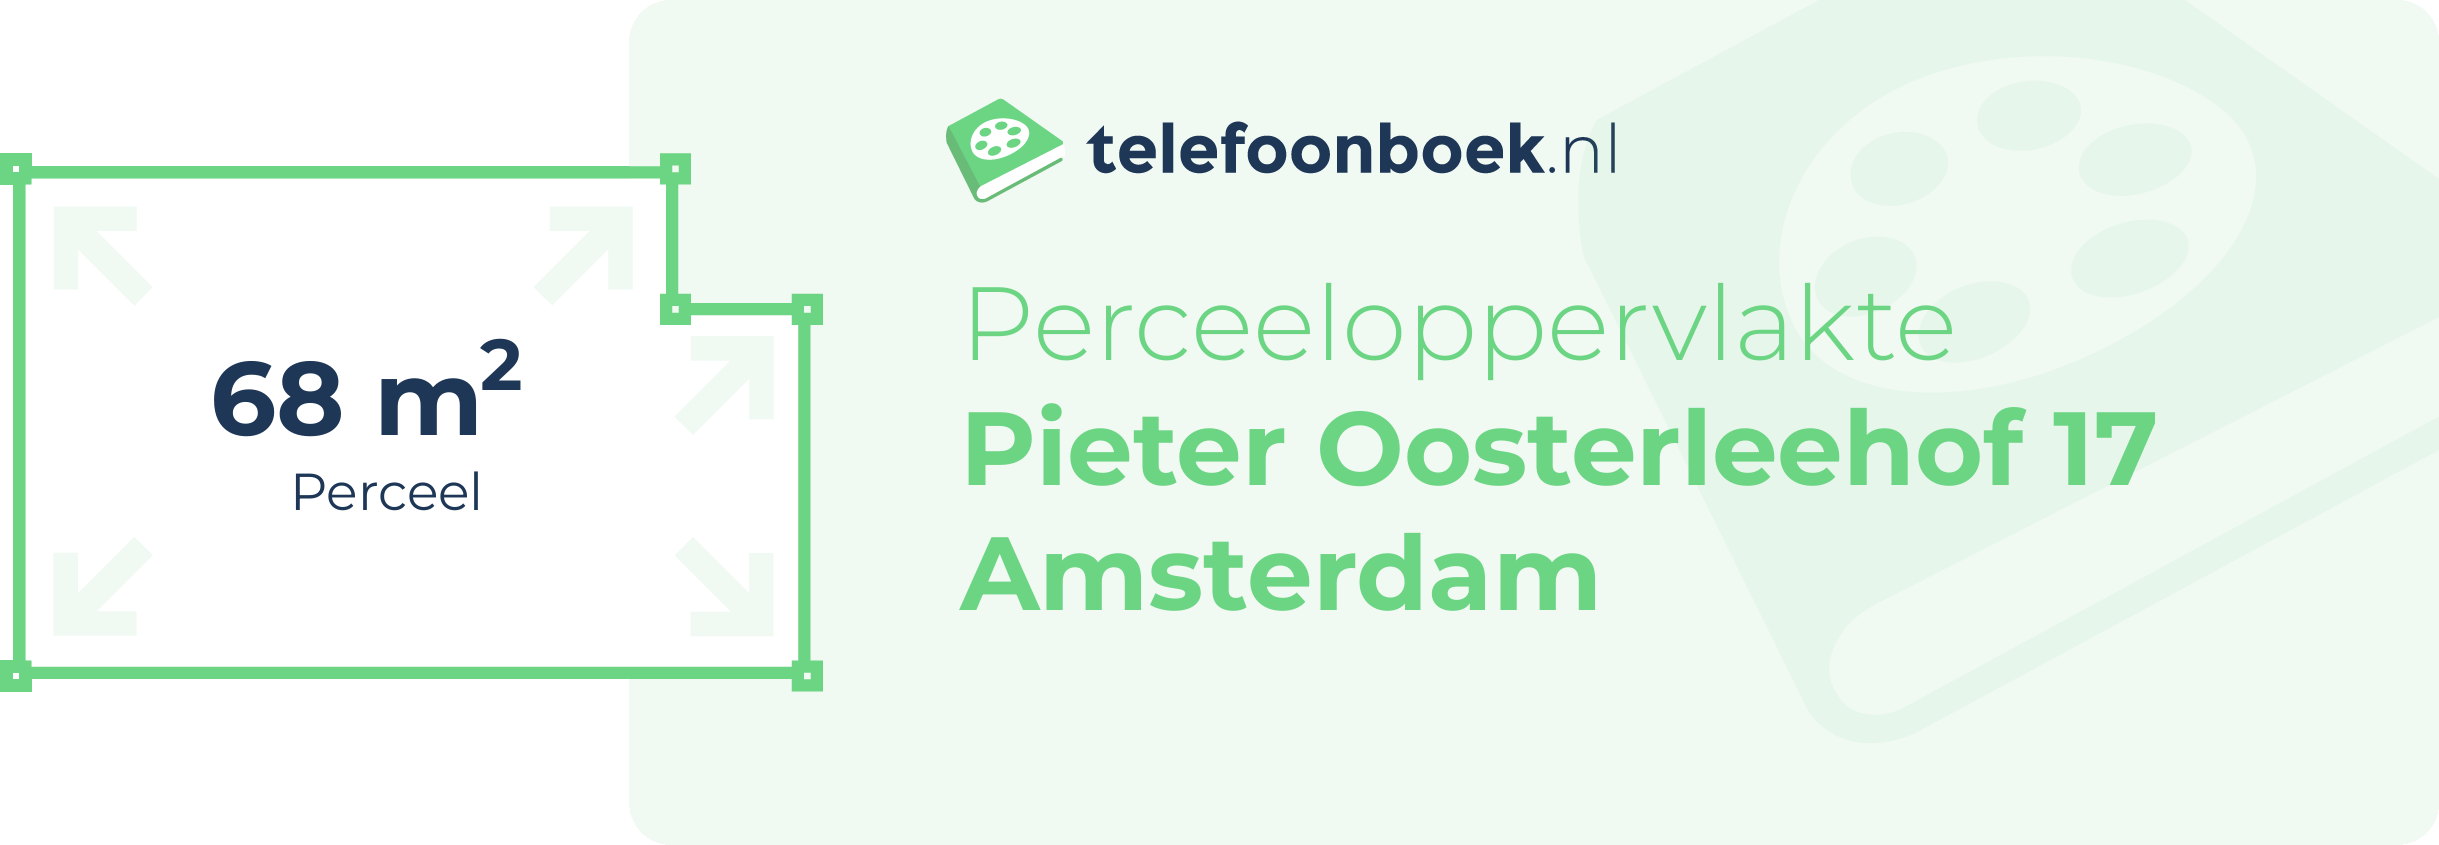 Perceeloppervlakte Pieter Oosterleehof 17 Amsterdam